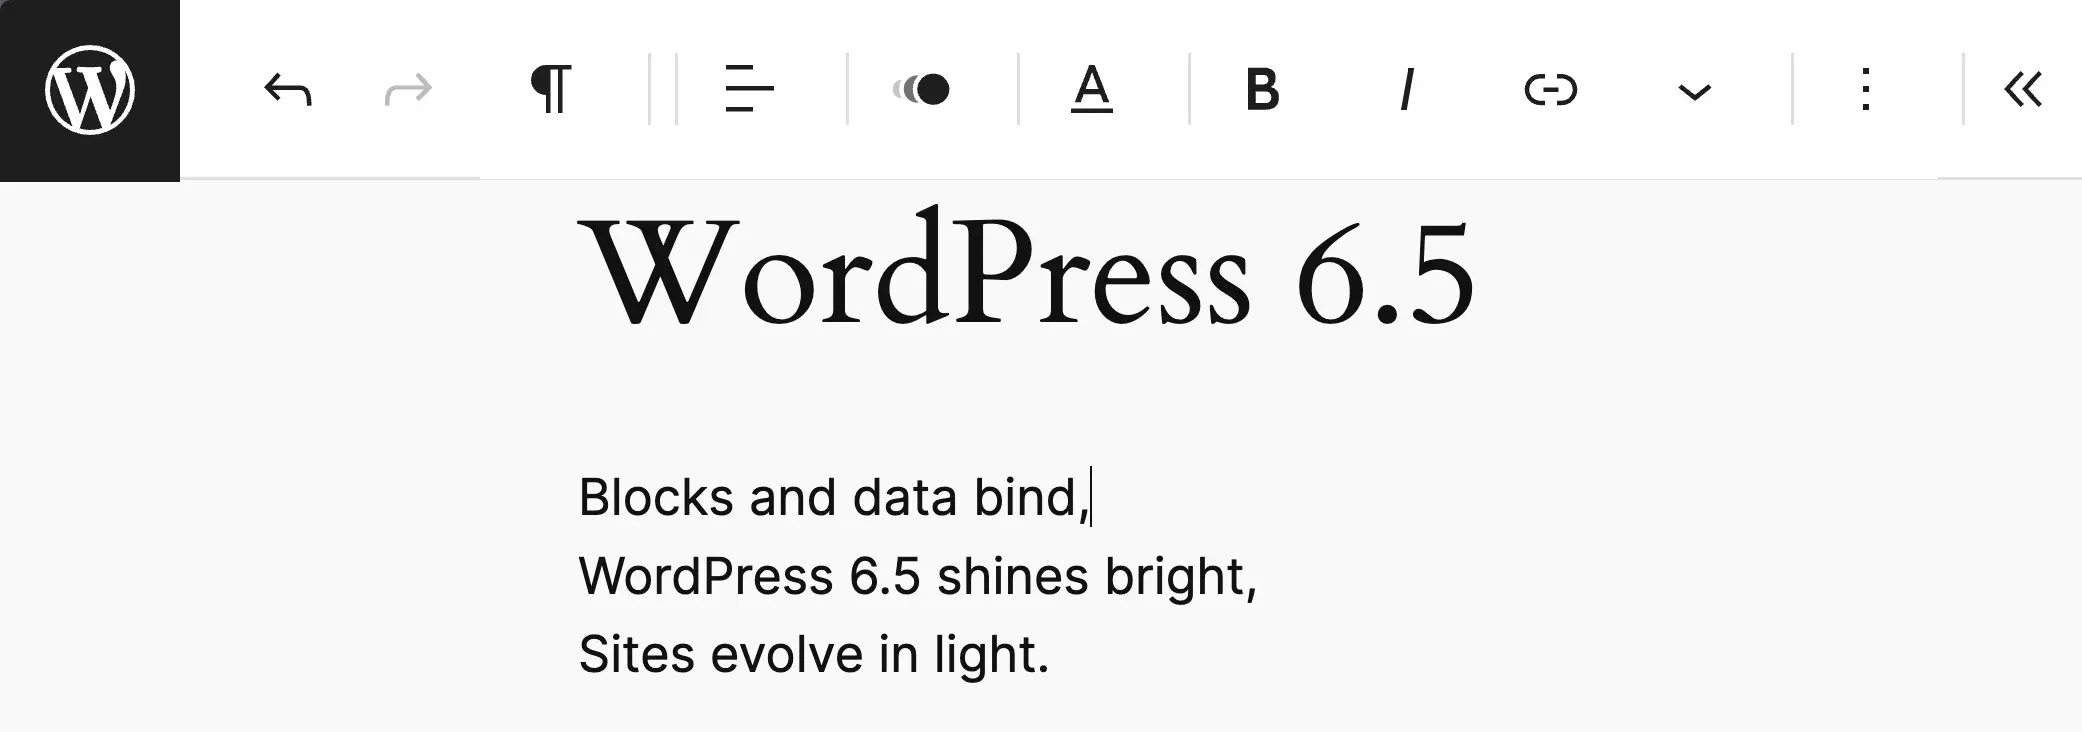 Modul WordPress 6.5 fără distracție a fost activat, demonstrând bara de instrumente de sus.